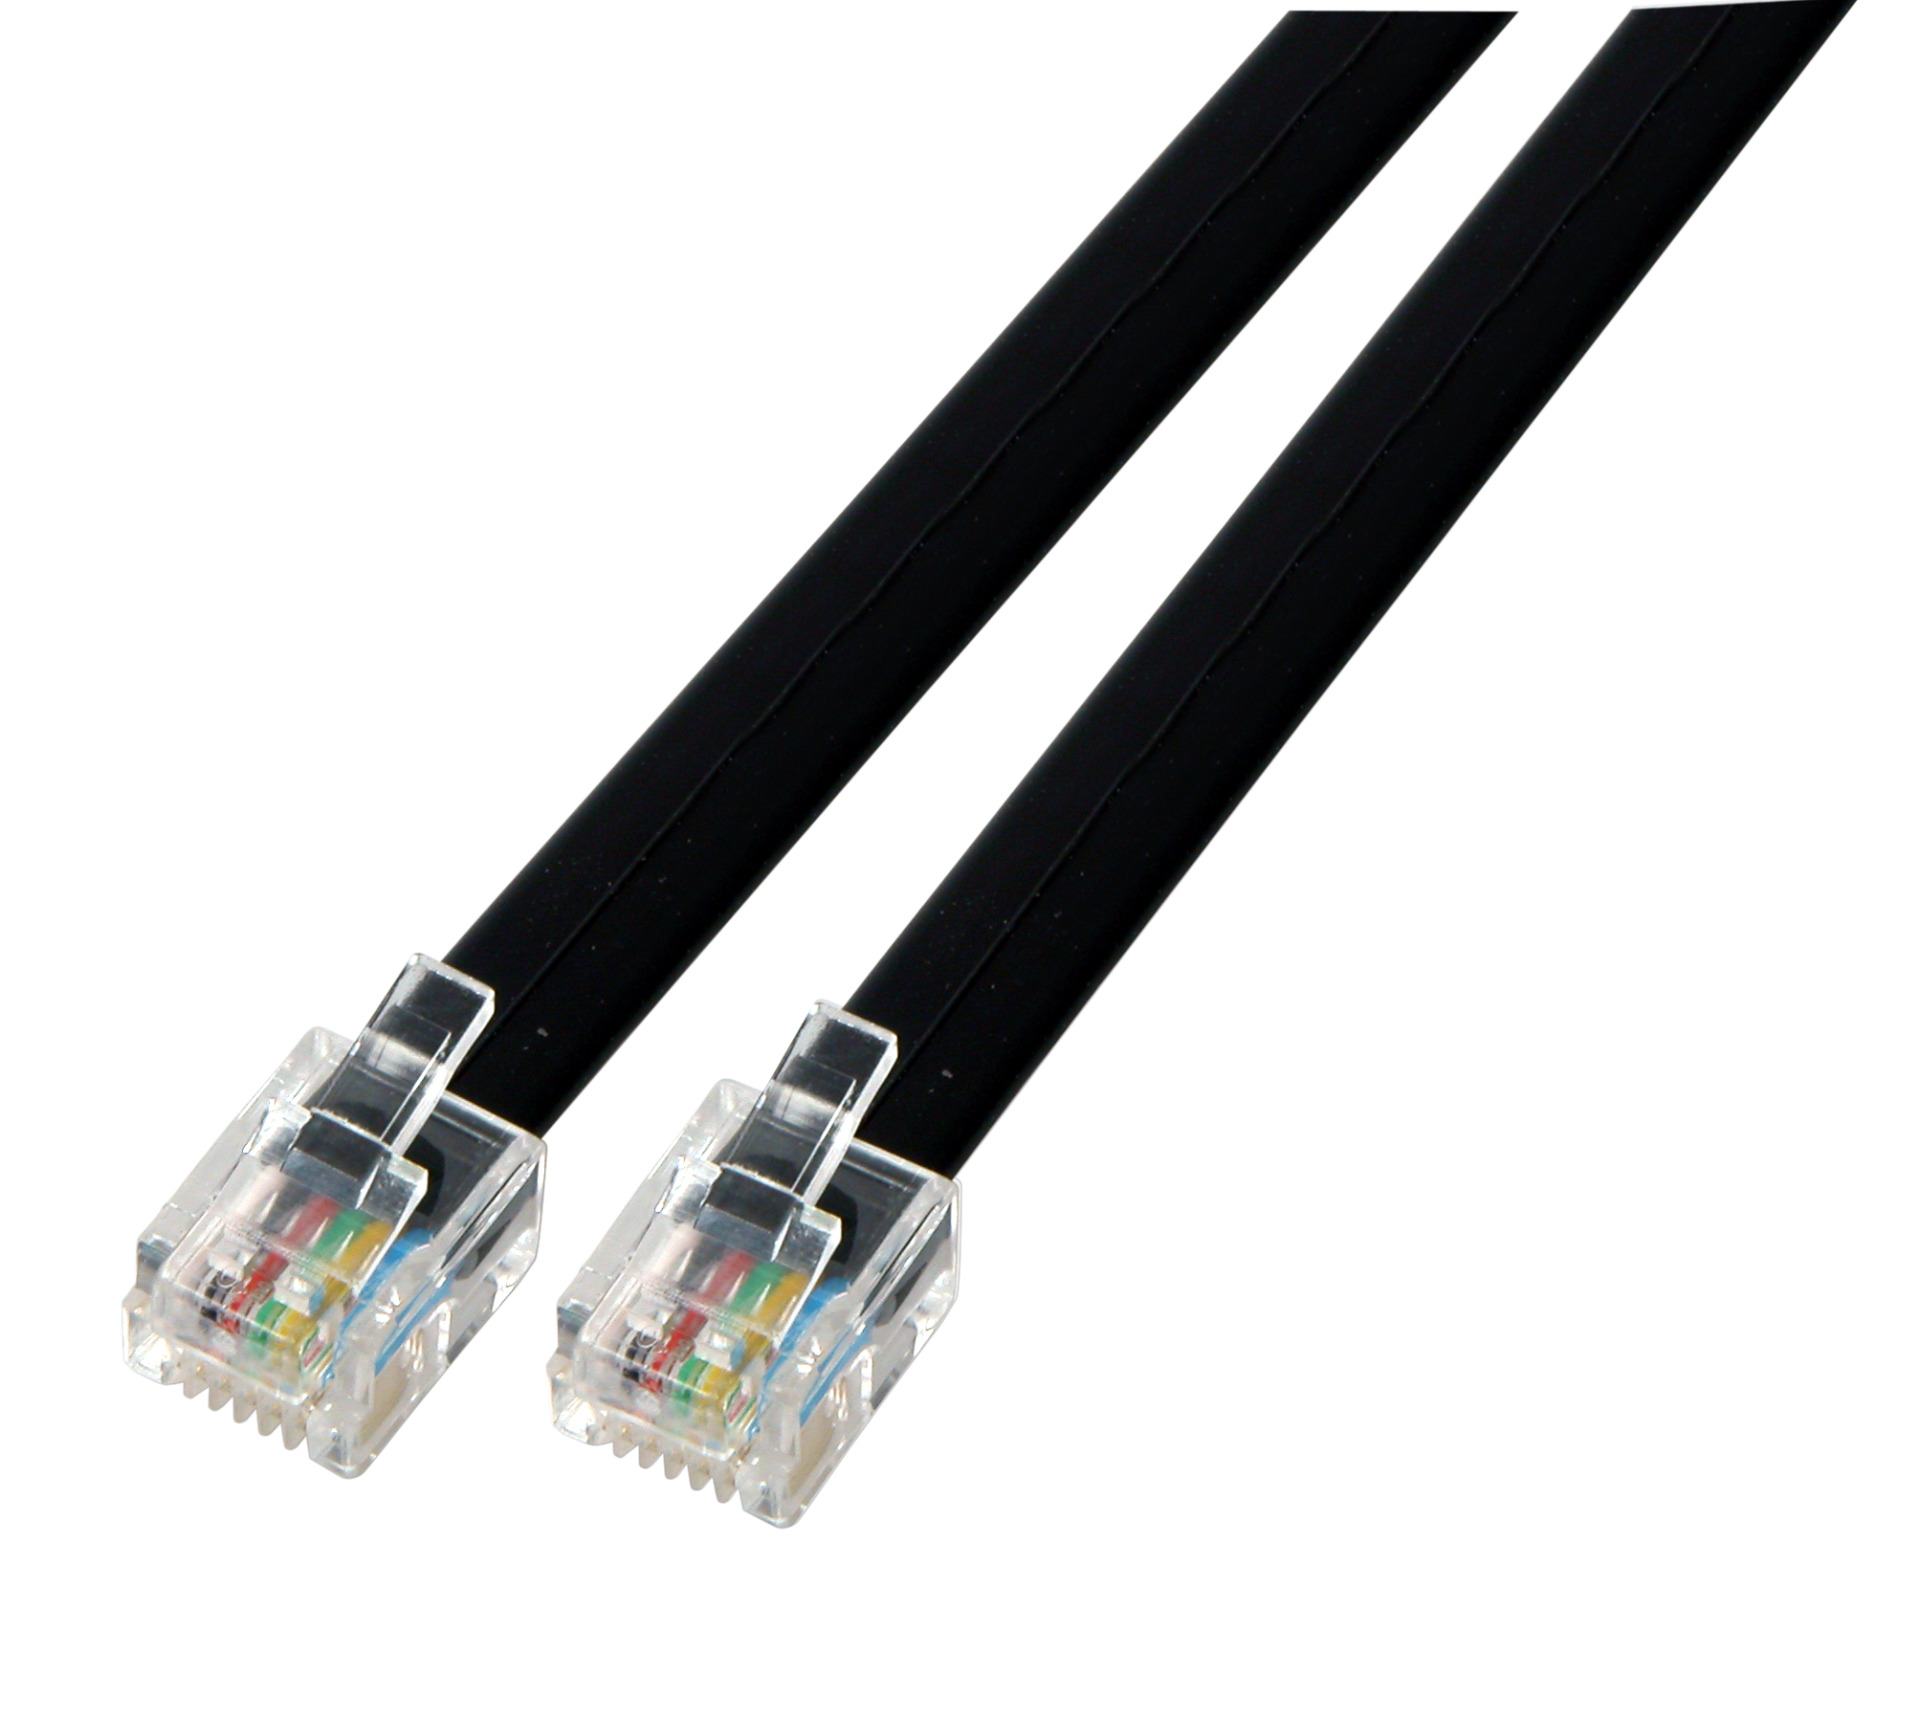 Modular cable black 2 x RJ11 (6/4) Plug, 1:1, 3,0m